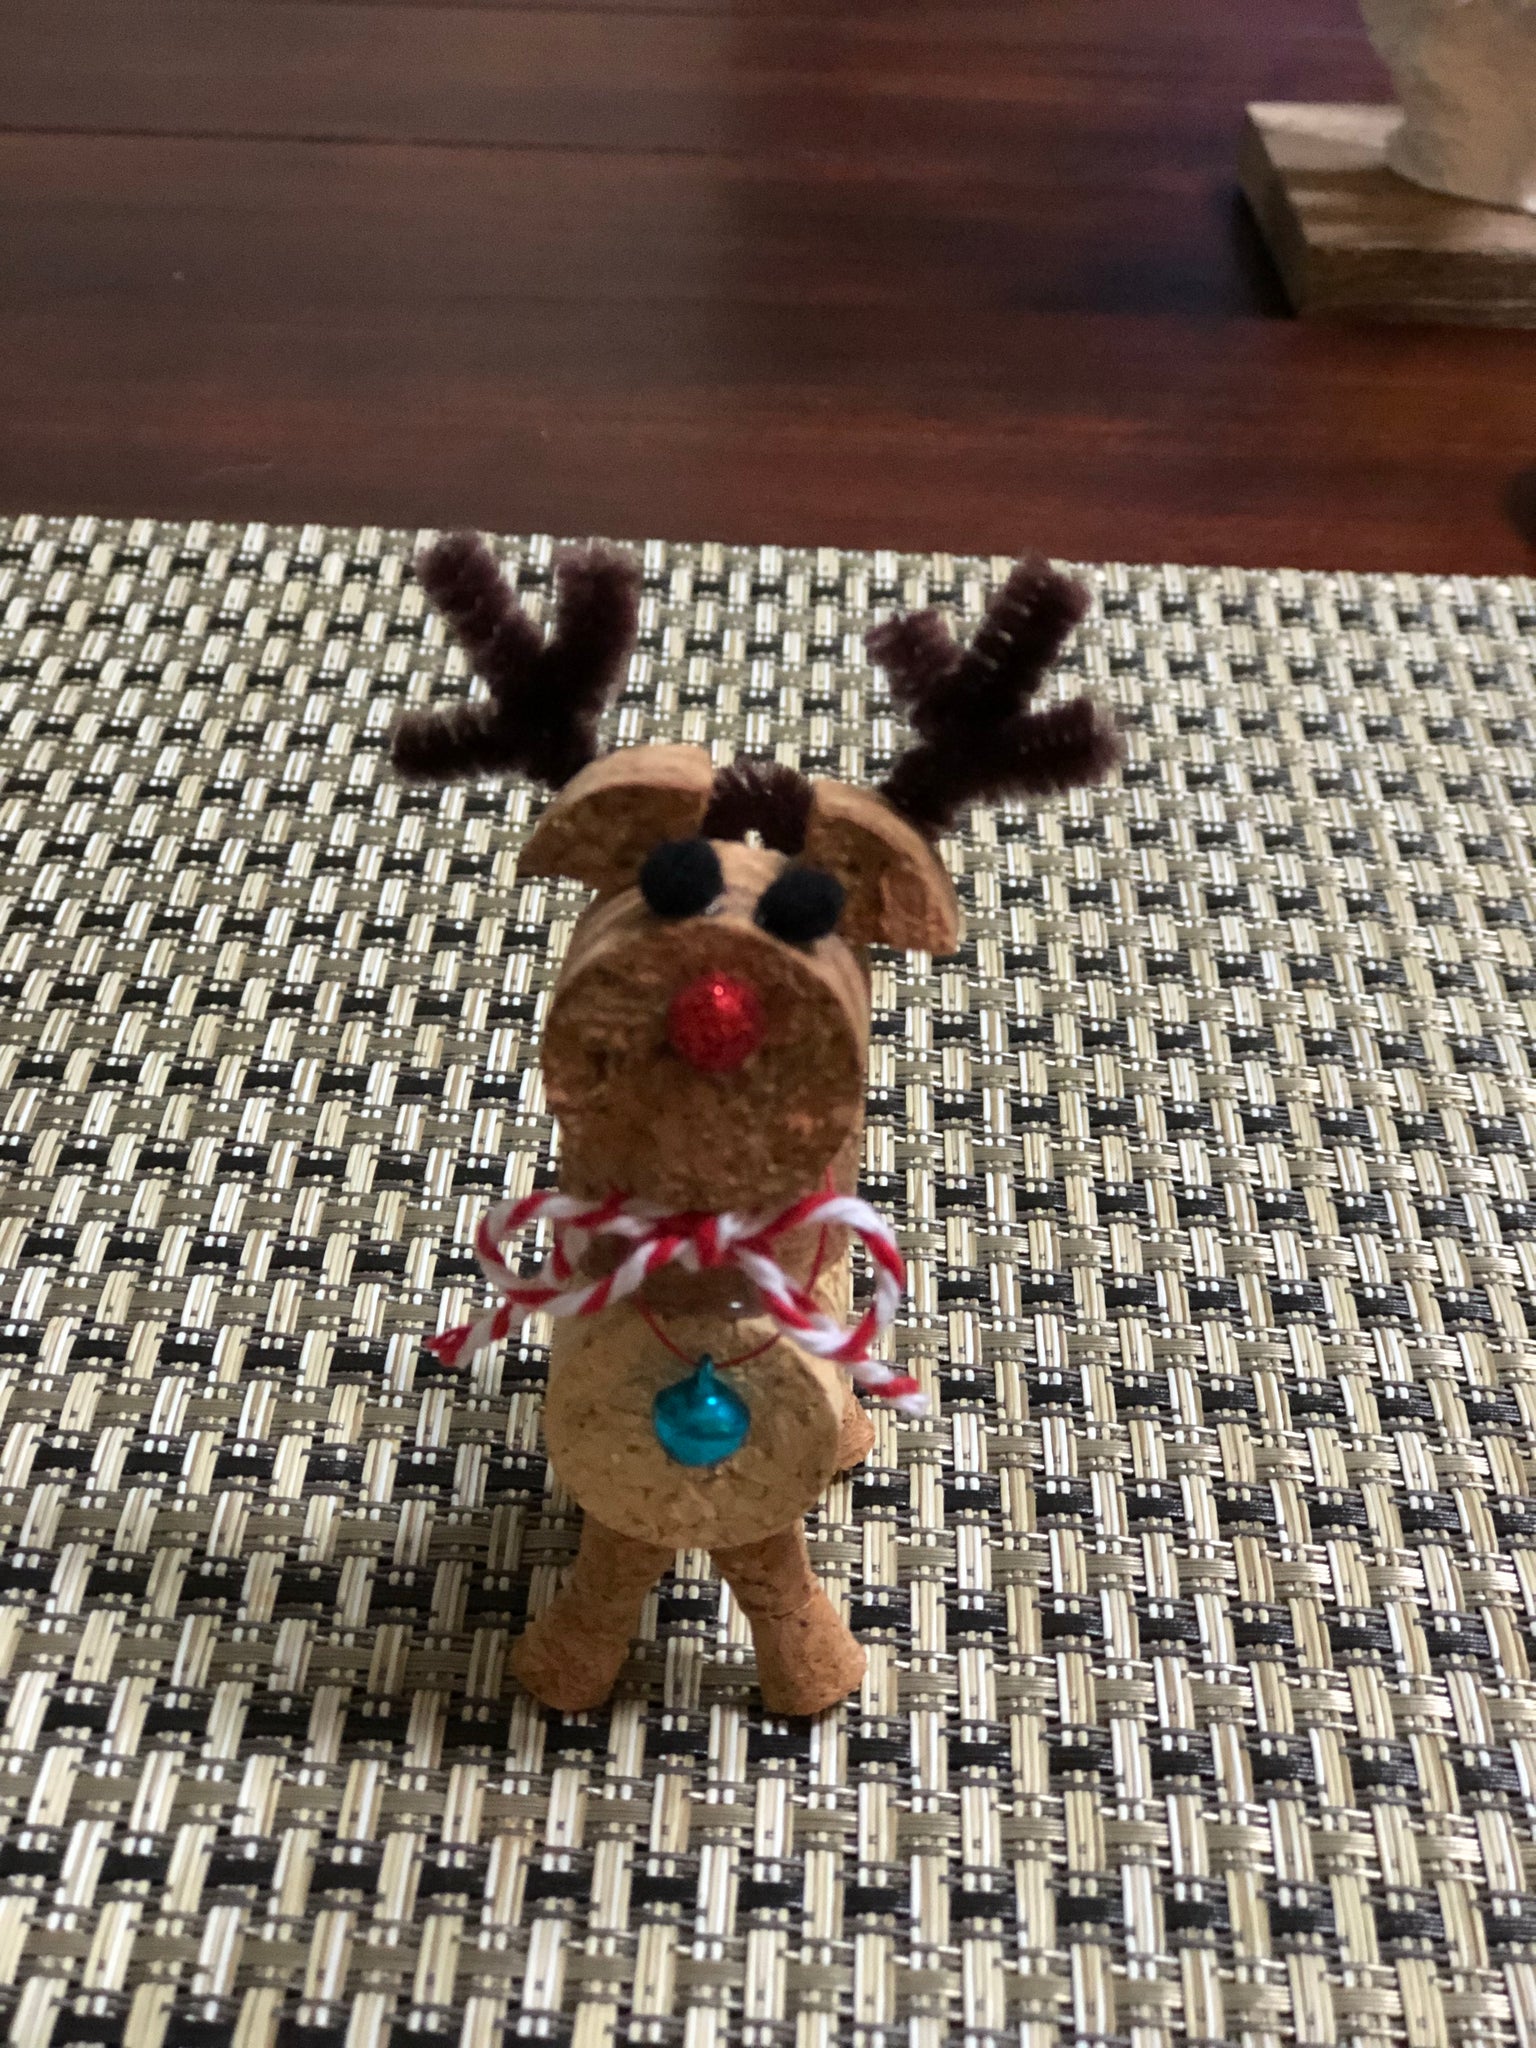 Cork Reindeer